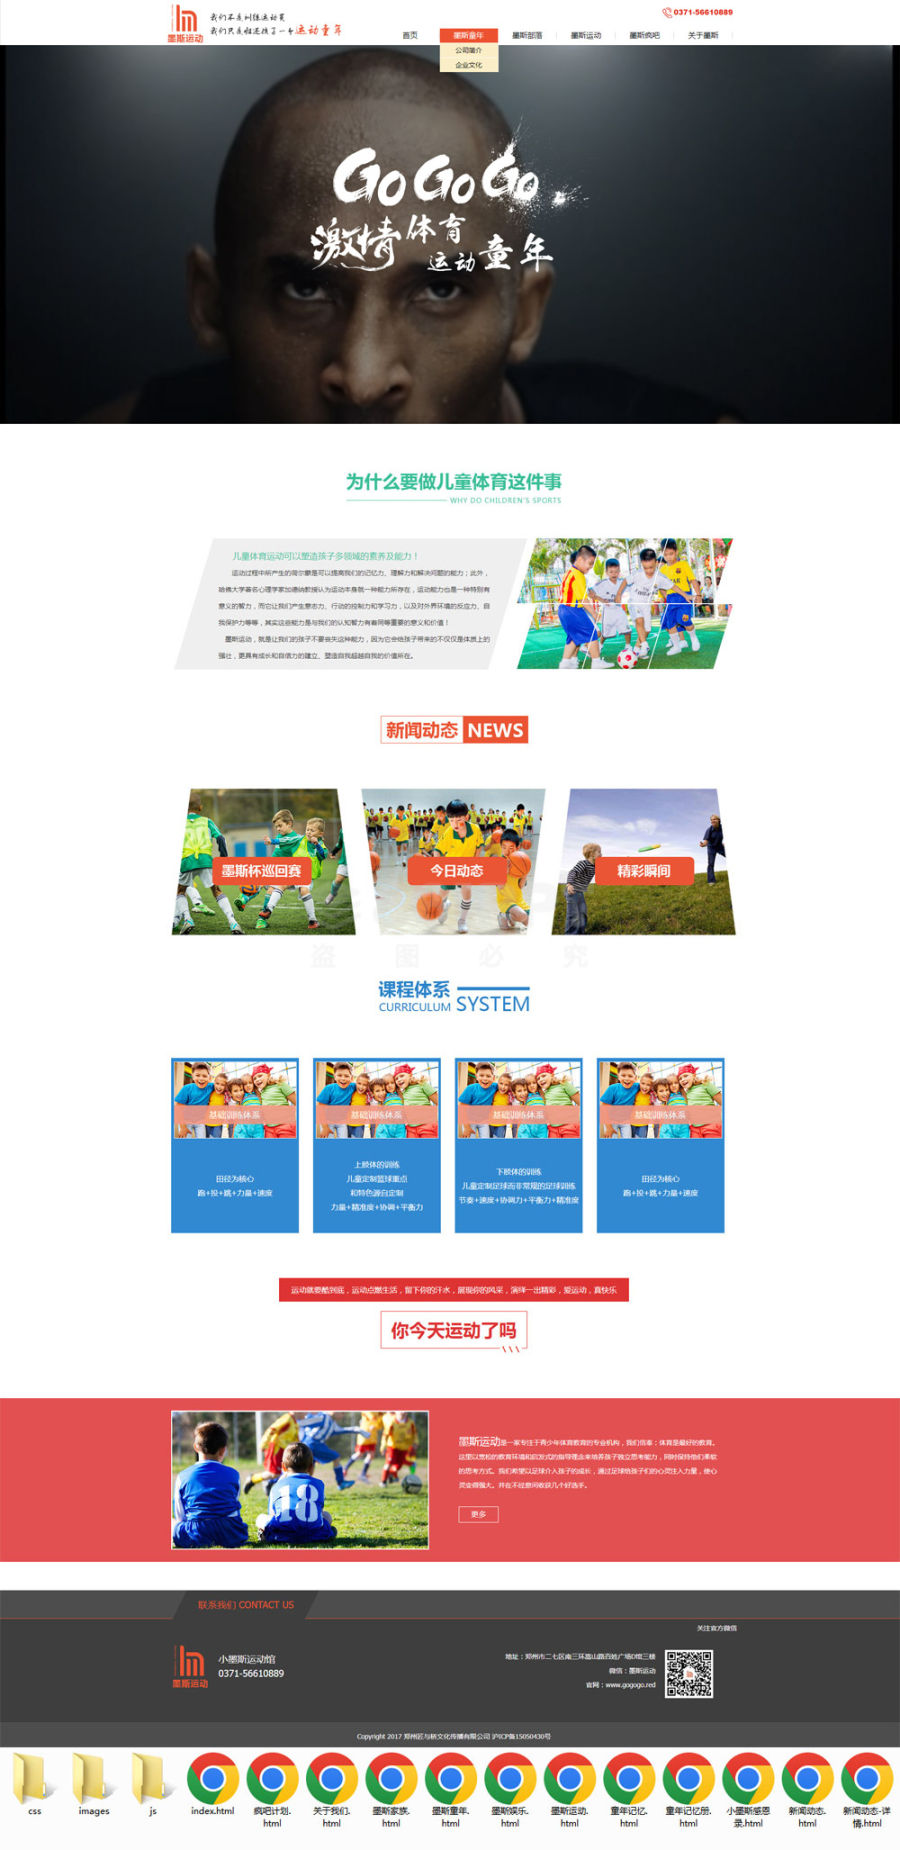 大气的青少年儿童体育运动培训机构官方网站模板